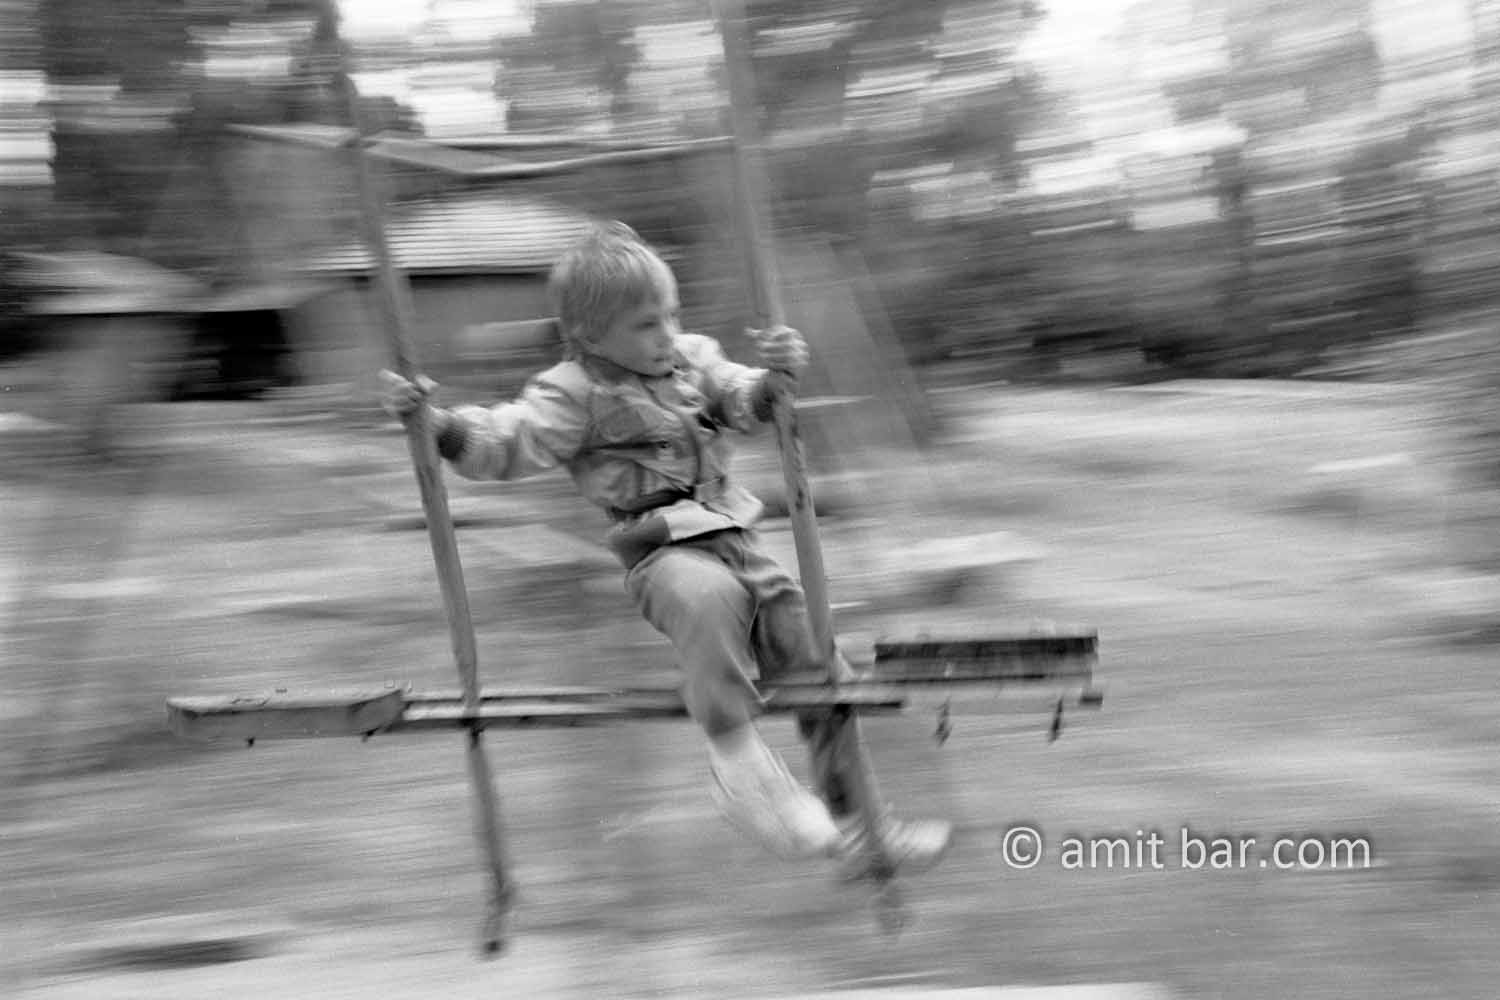 Swinging: Little boy is swinging on a swing